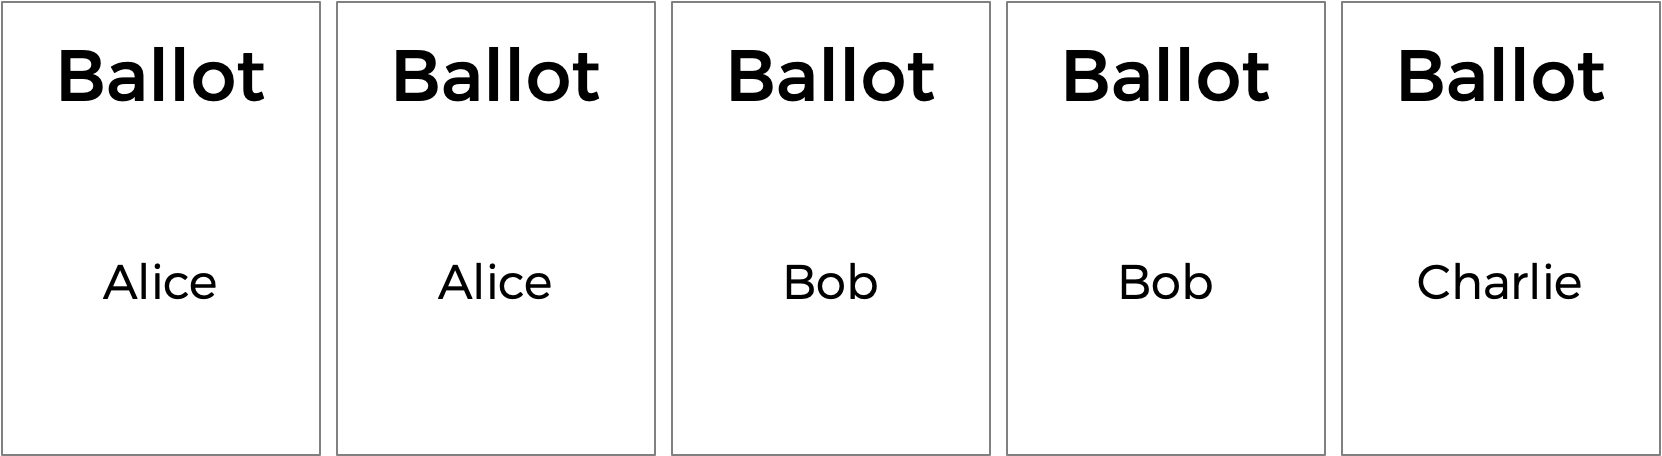 Five ballots, tie betweeen Alice and Bob